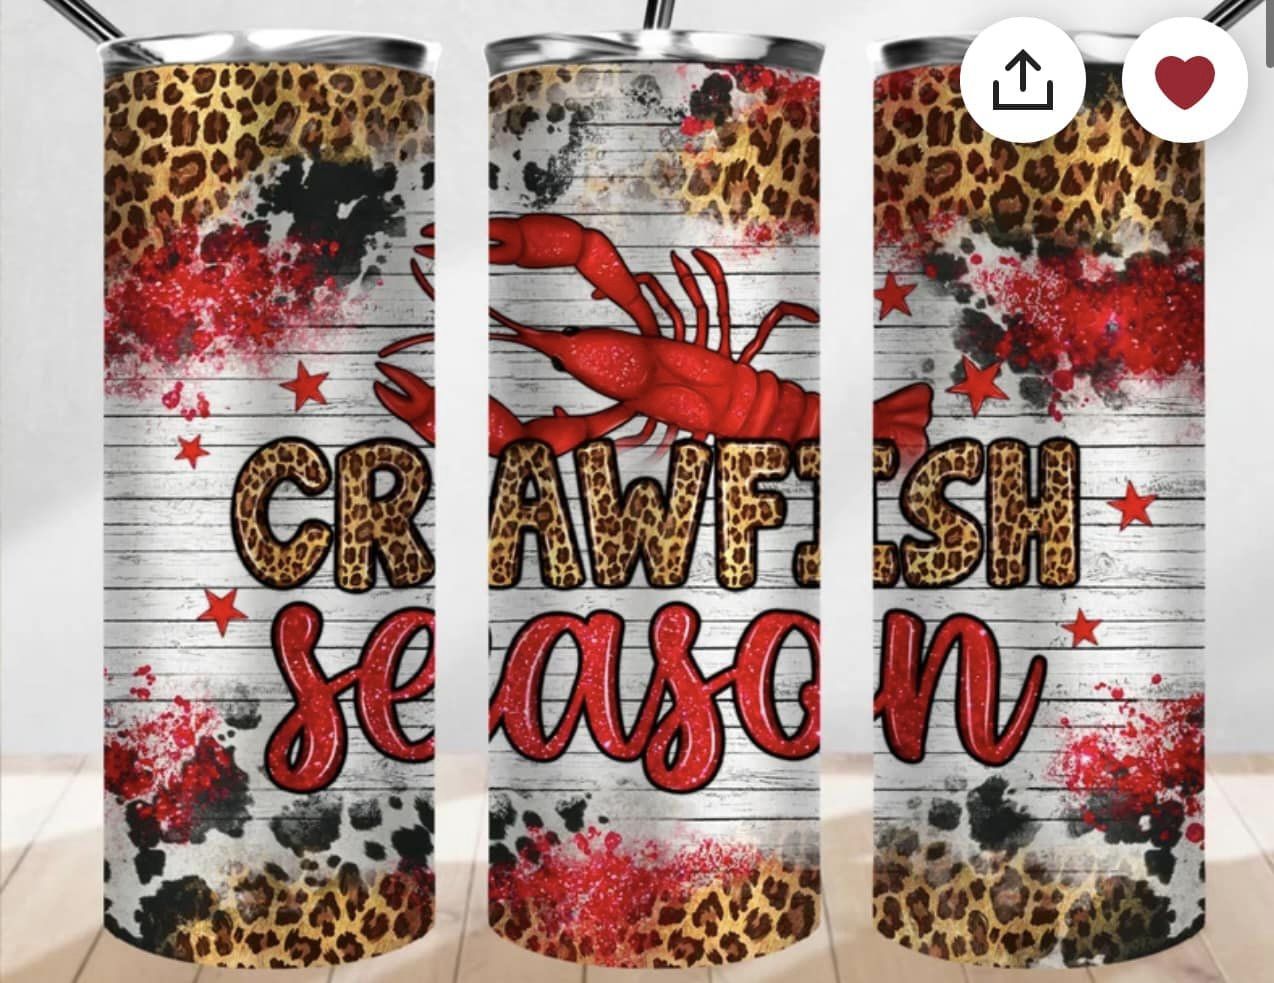 crawfish season!